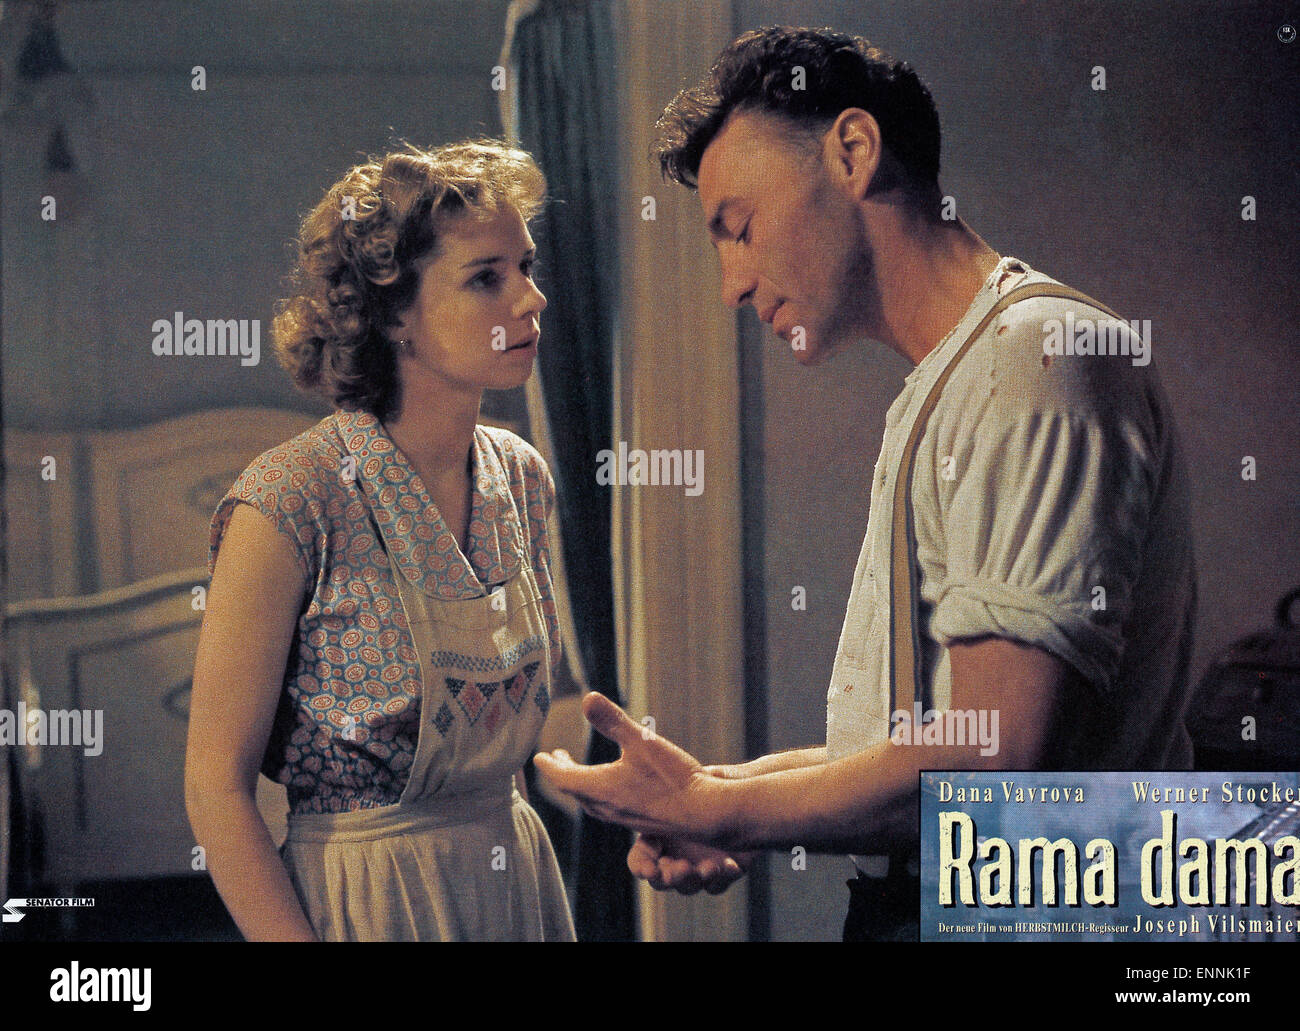 Rama dama, Deutschland 1991, Regie: Joseph Vilsmaier, Darsteller: Dana  Vavrova, Werner Stocker Fotografía de stock - Alamy